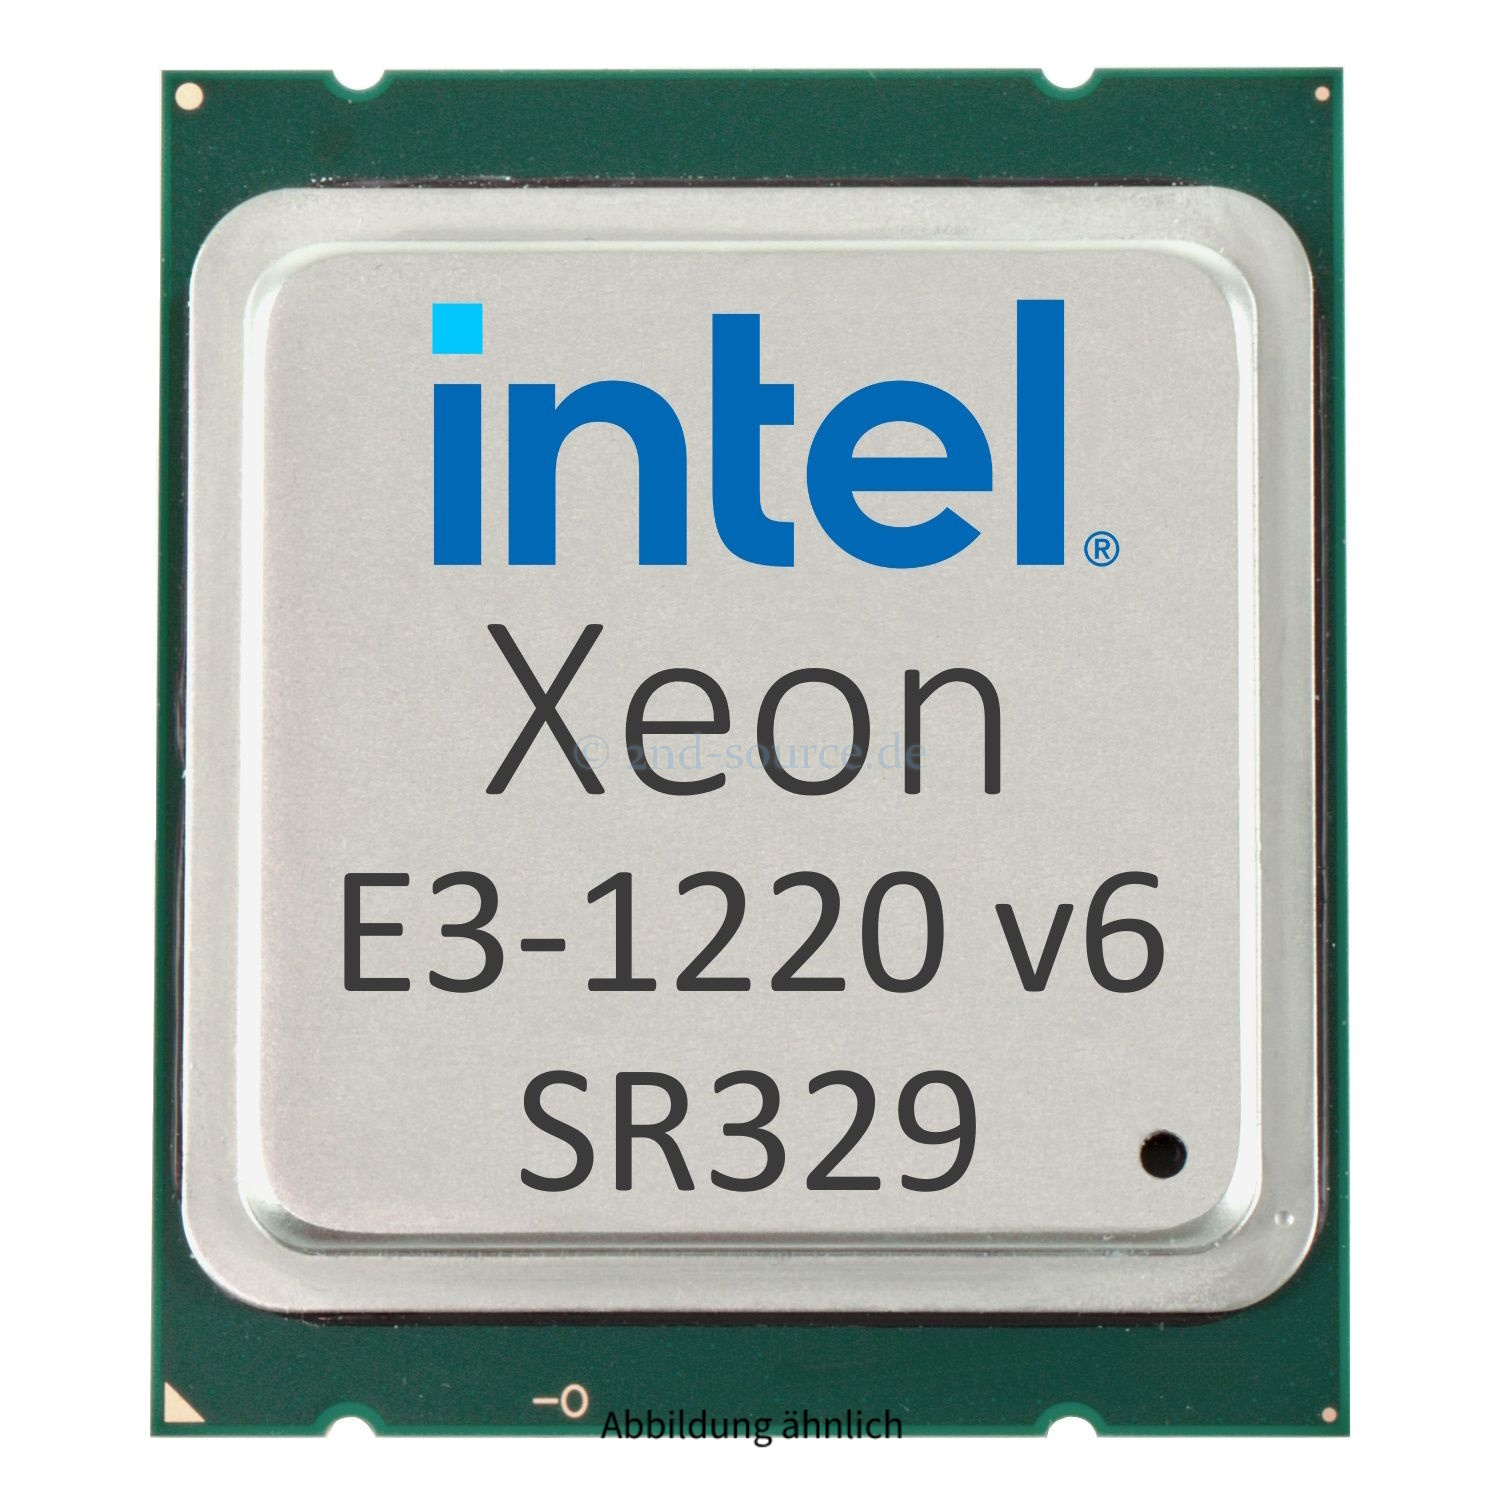 Intel Xeon E3-1220 v6 3.00GHz 8MB 4-Core CPU 72W SR329 CM8067702870812